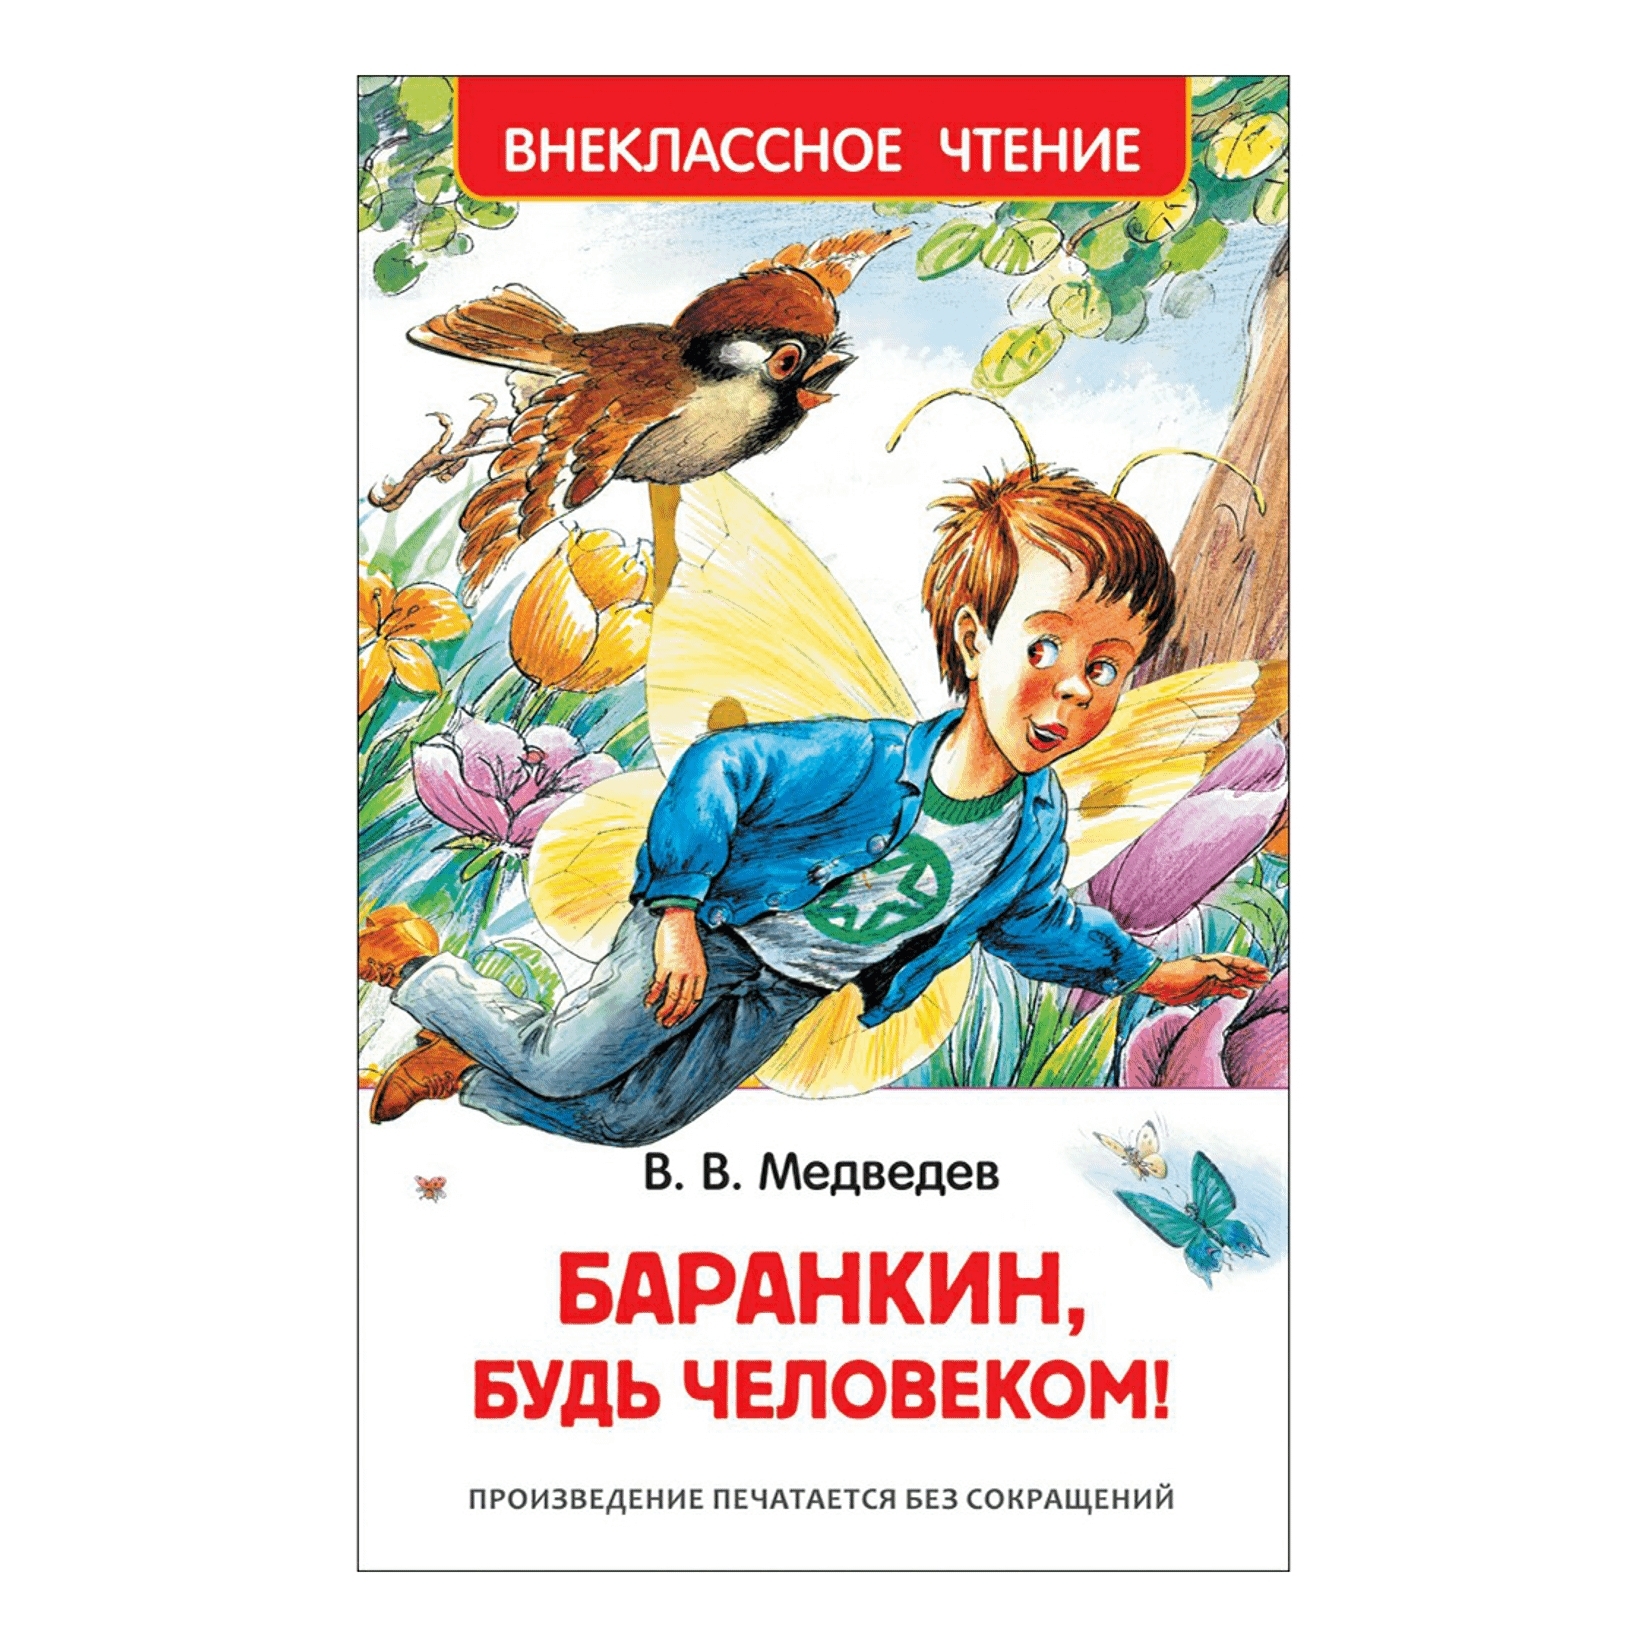 Произведение будь человеком автор. Книга Медведева Баранкин будь человеком. Медведев Баранкин будь человеком обложка.